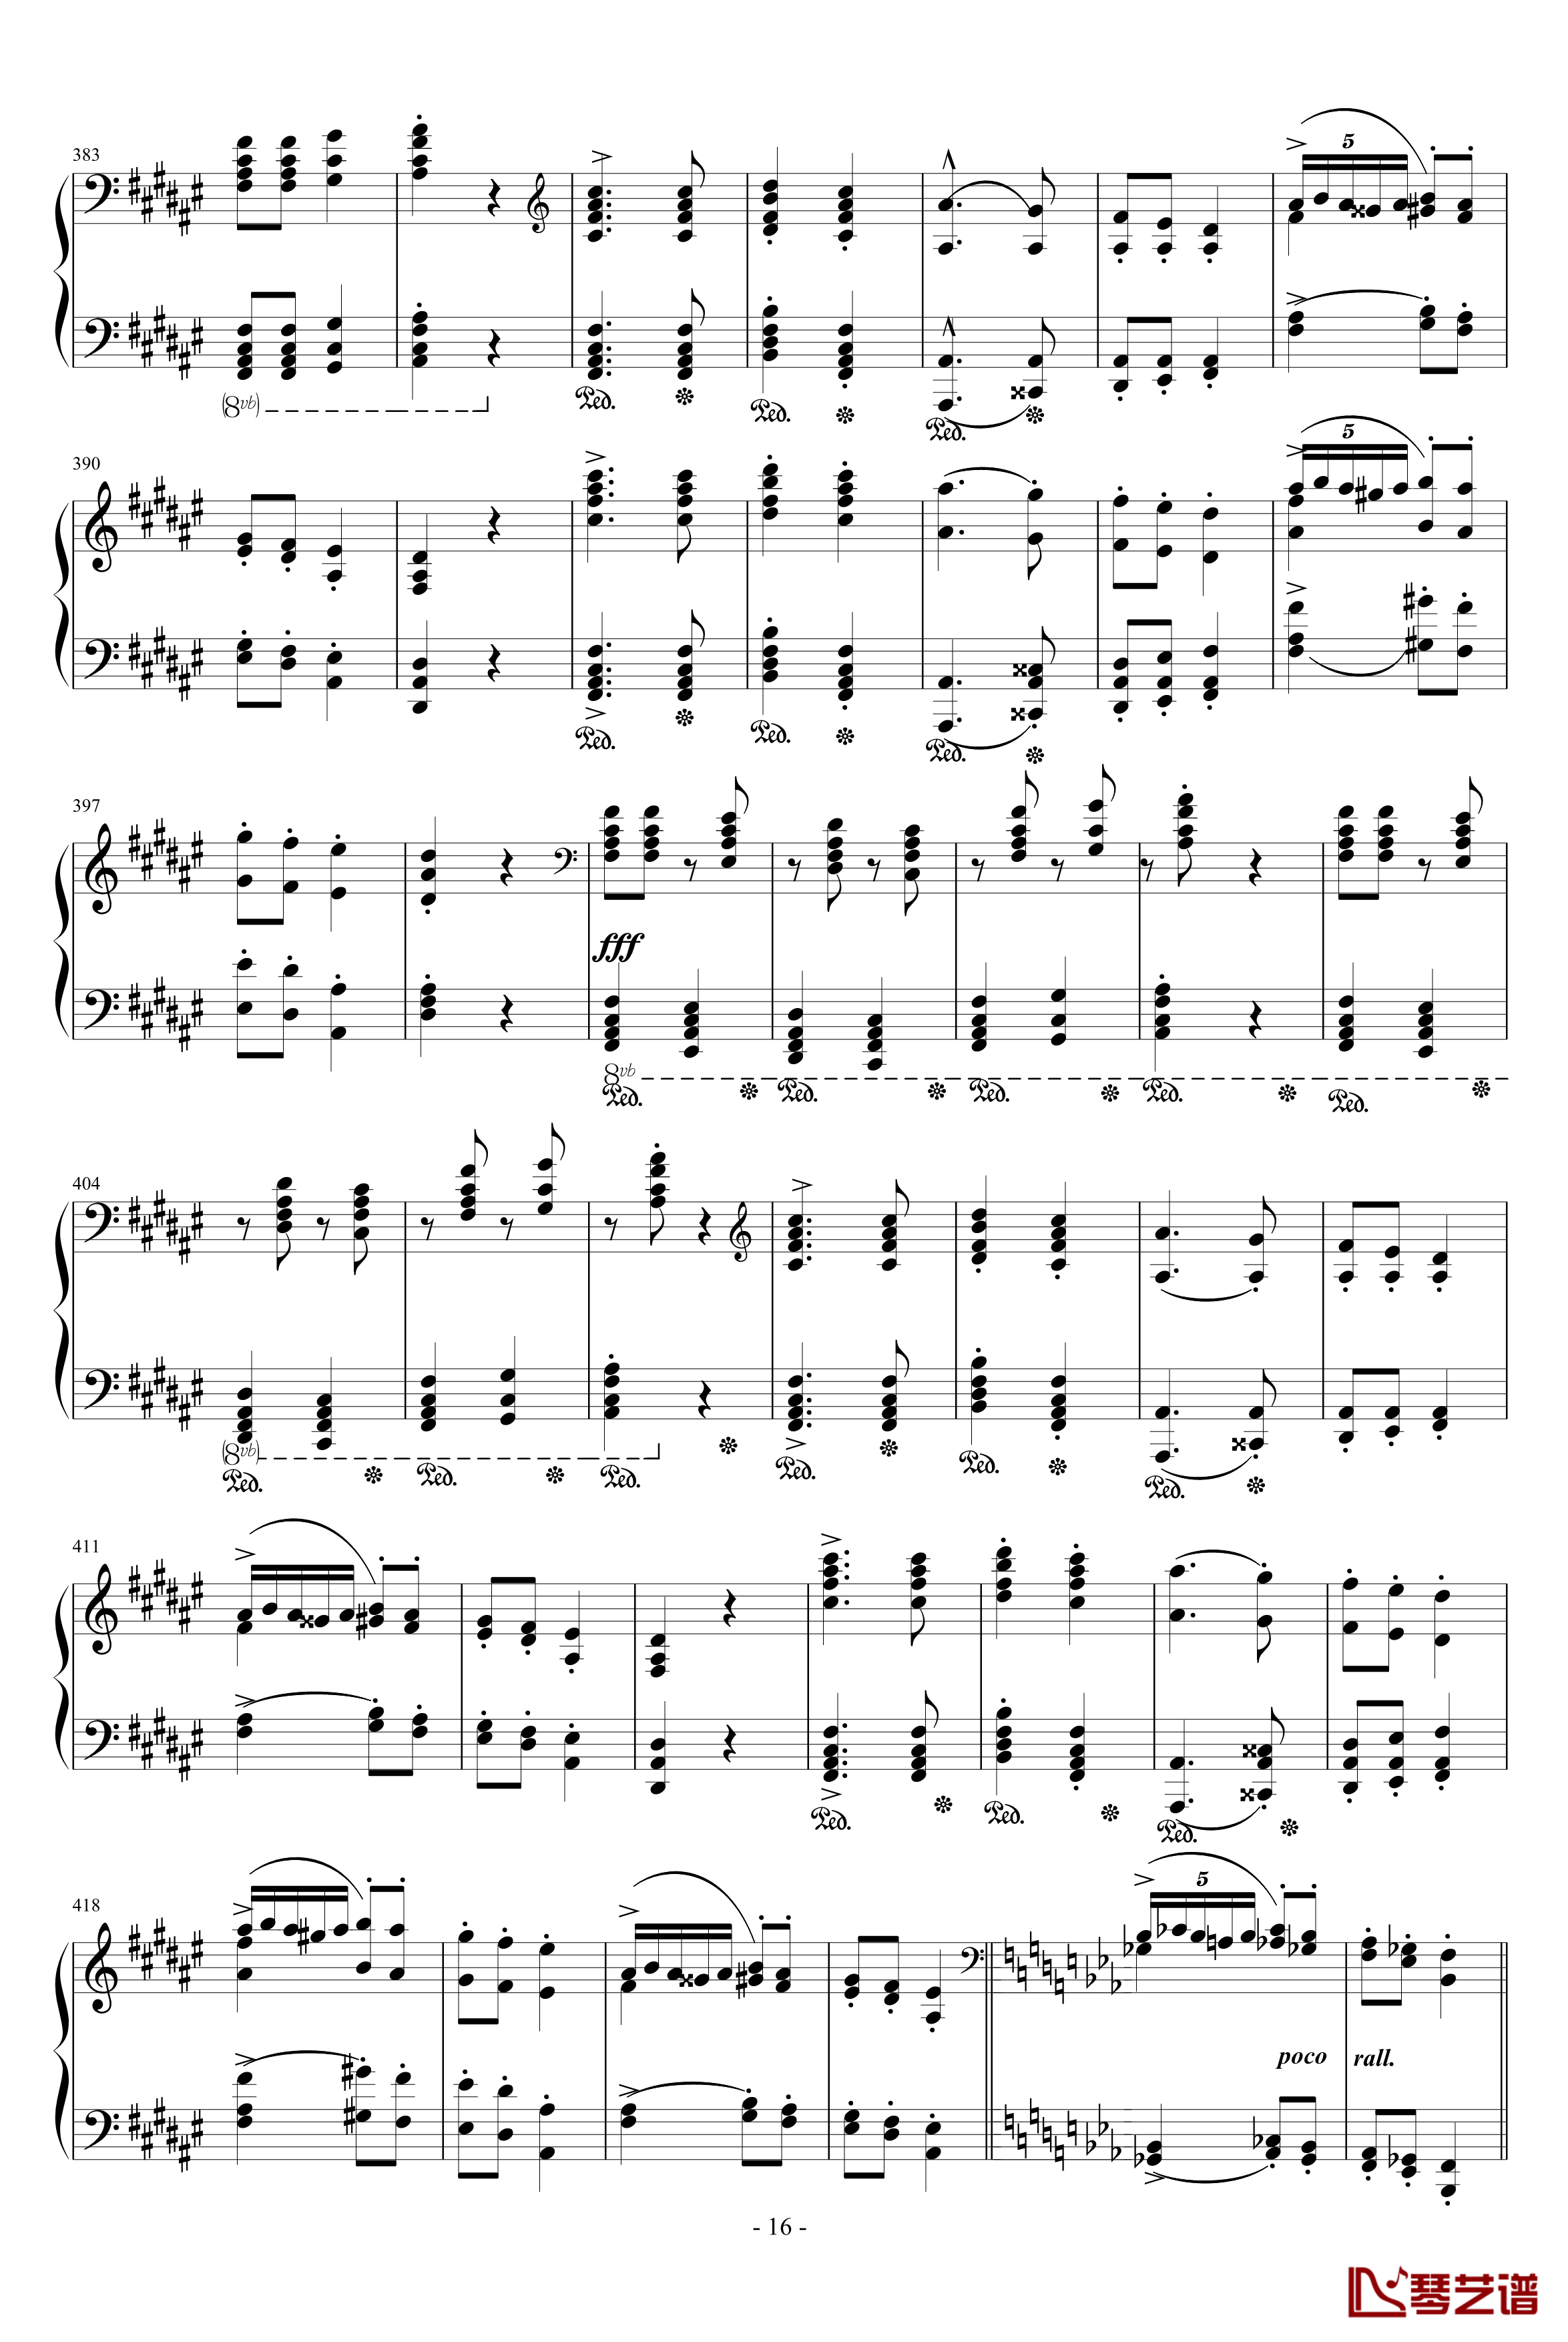 匈牙利狂想曲第9号钢琴谱-19首匈狂里篇幅最浩大、技巧最艰深的作品之一-李斯特16